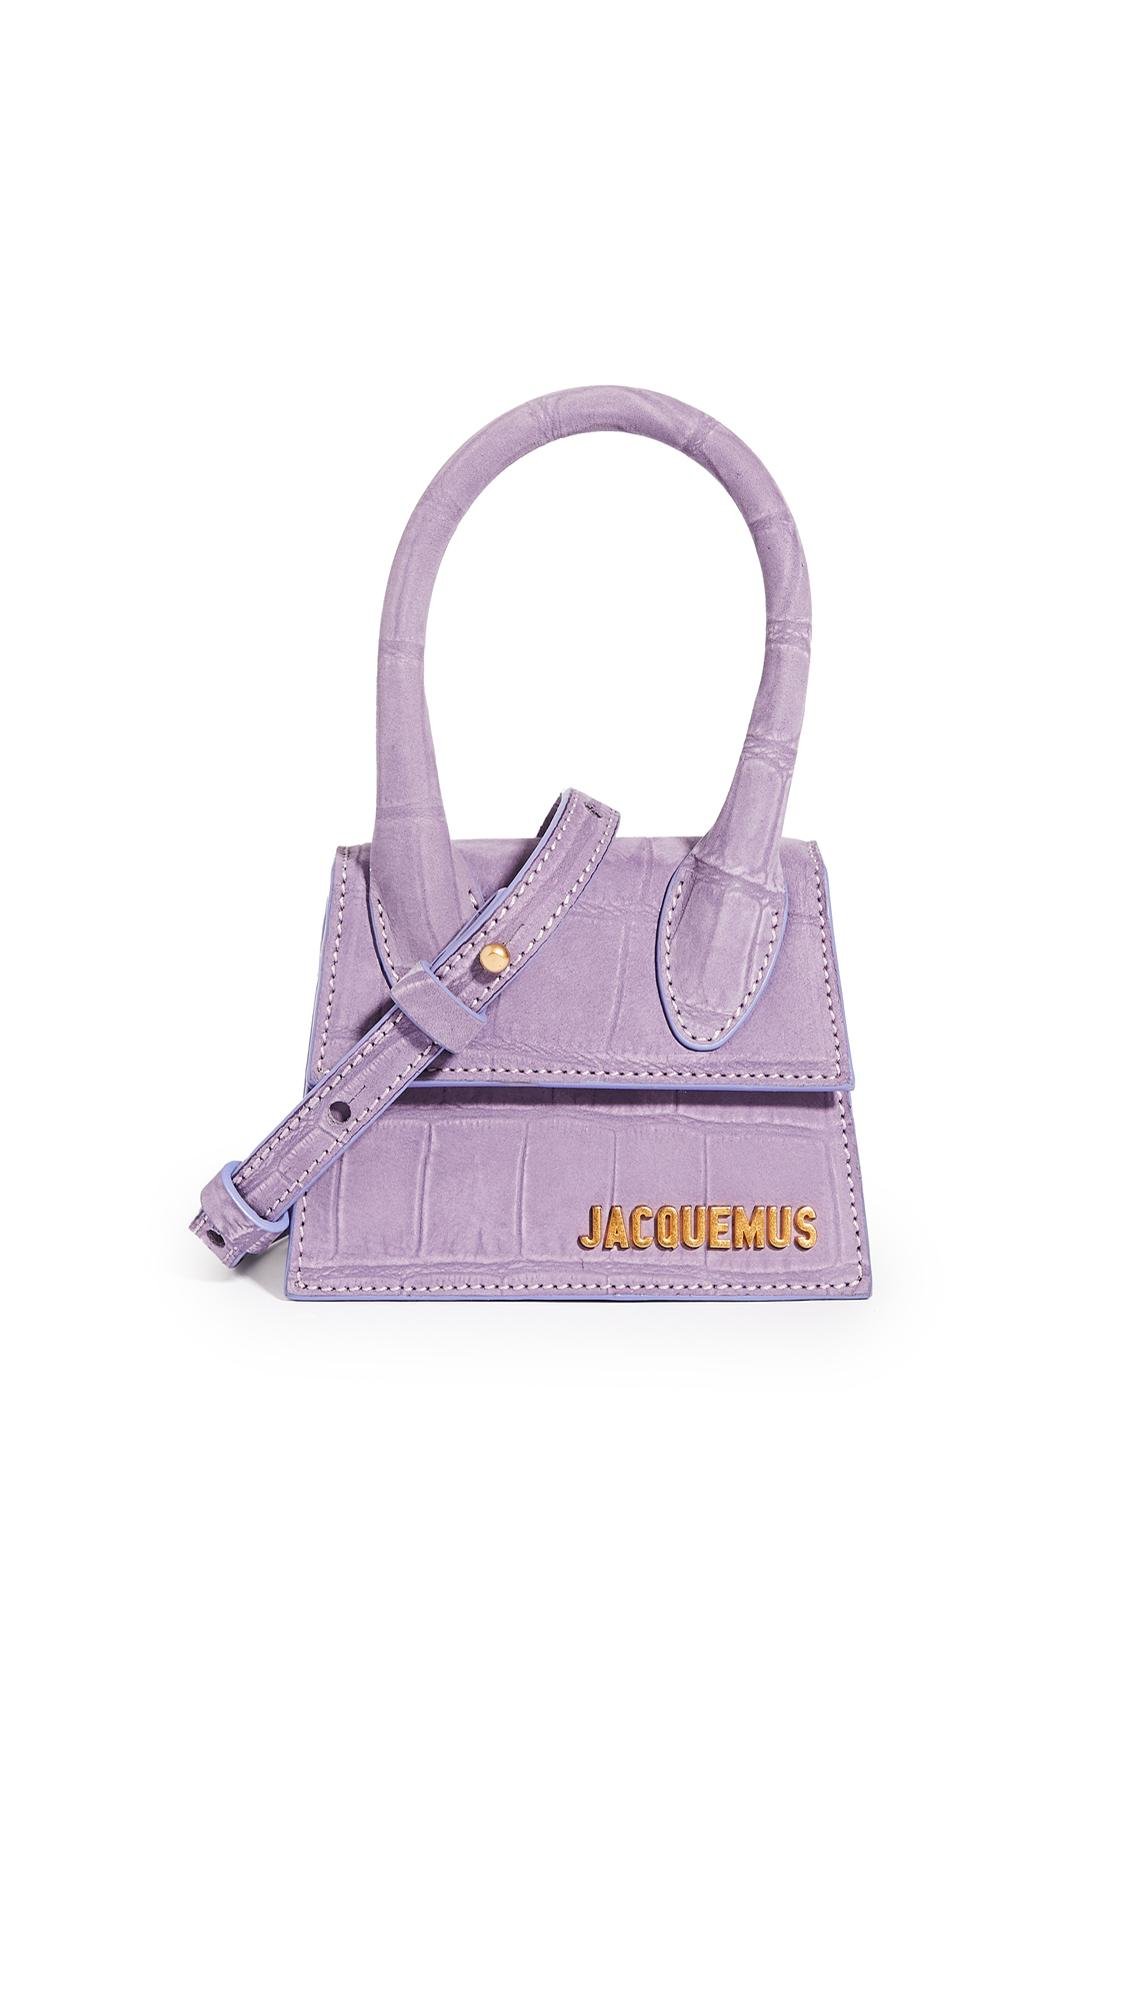 Jacquemus Le Chiquito Bag in Purple | Lyst Canada